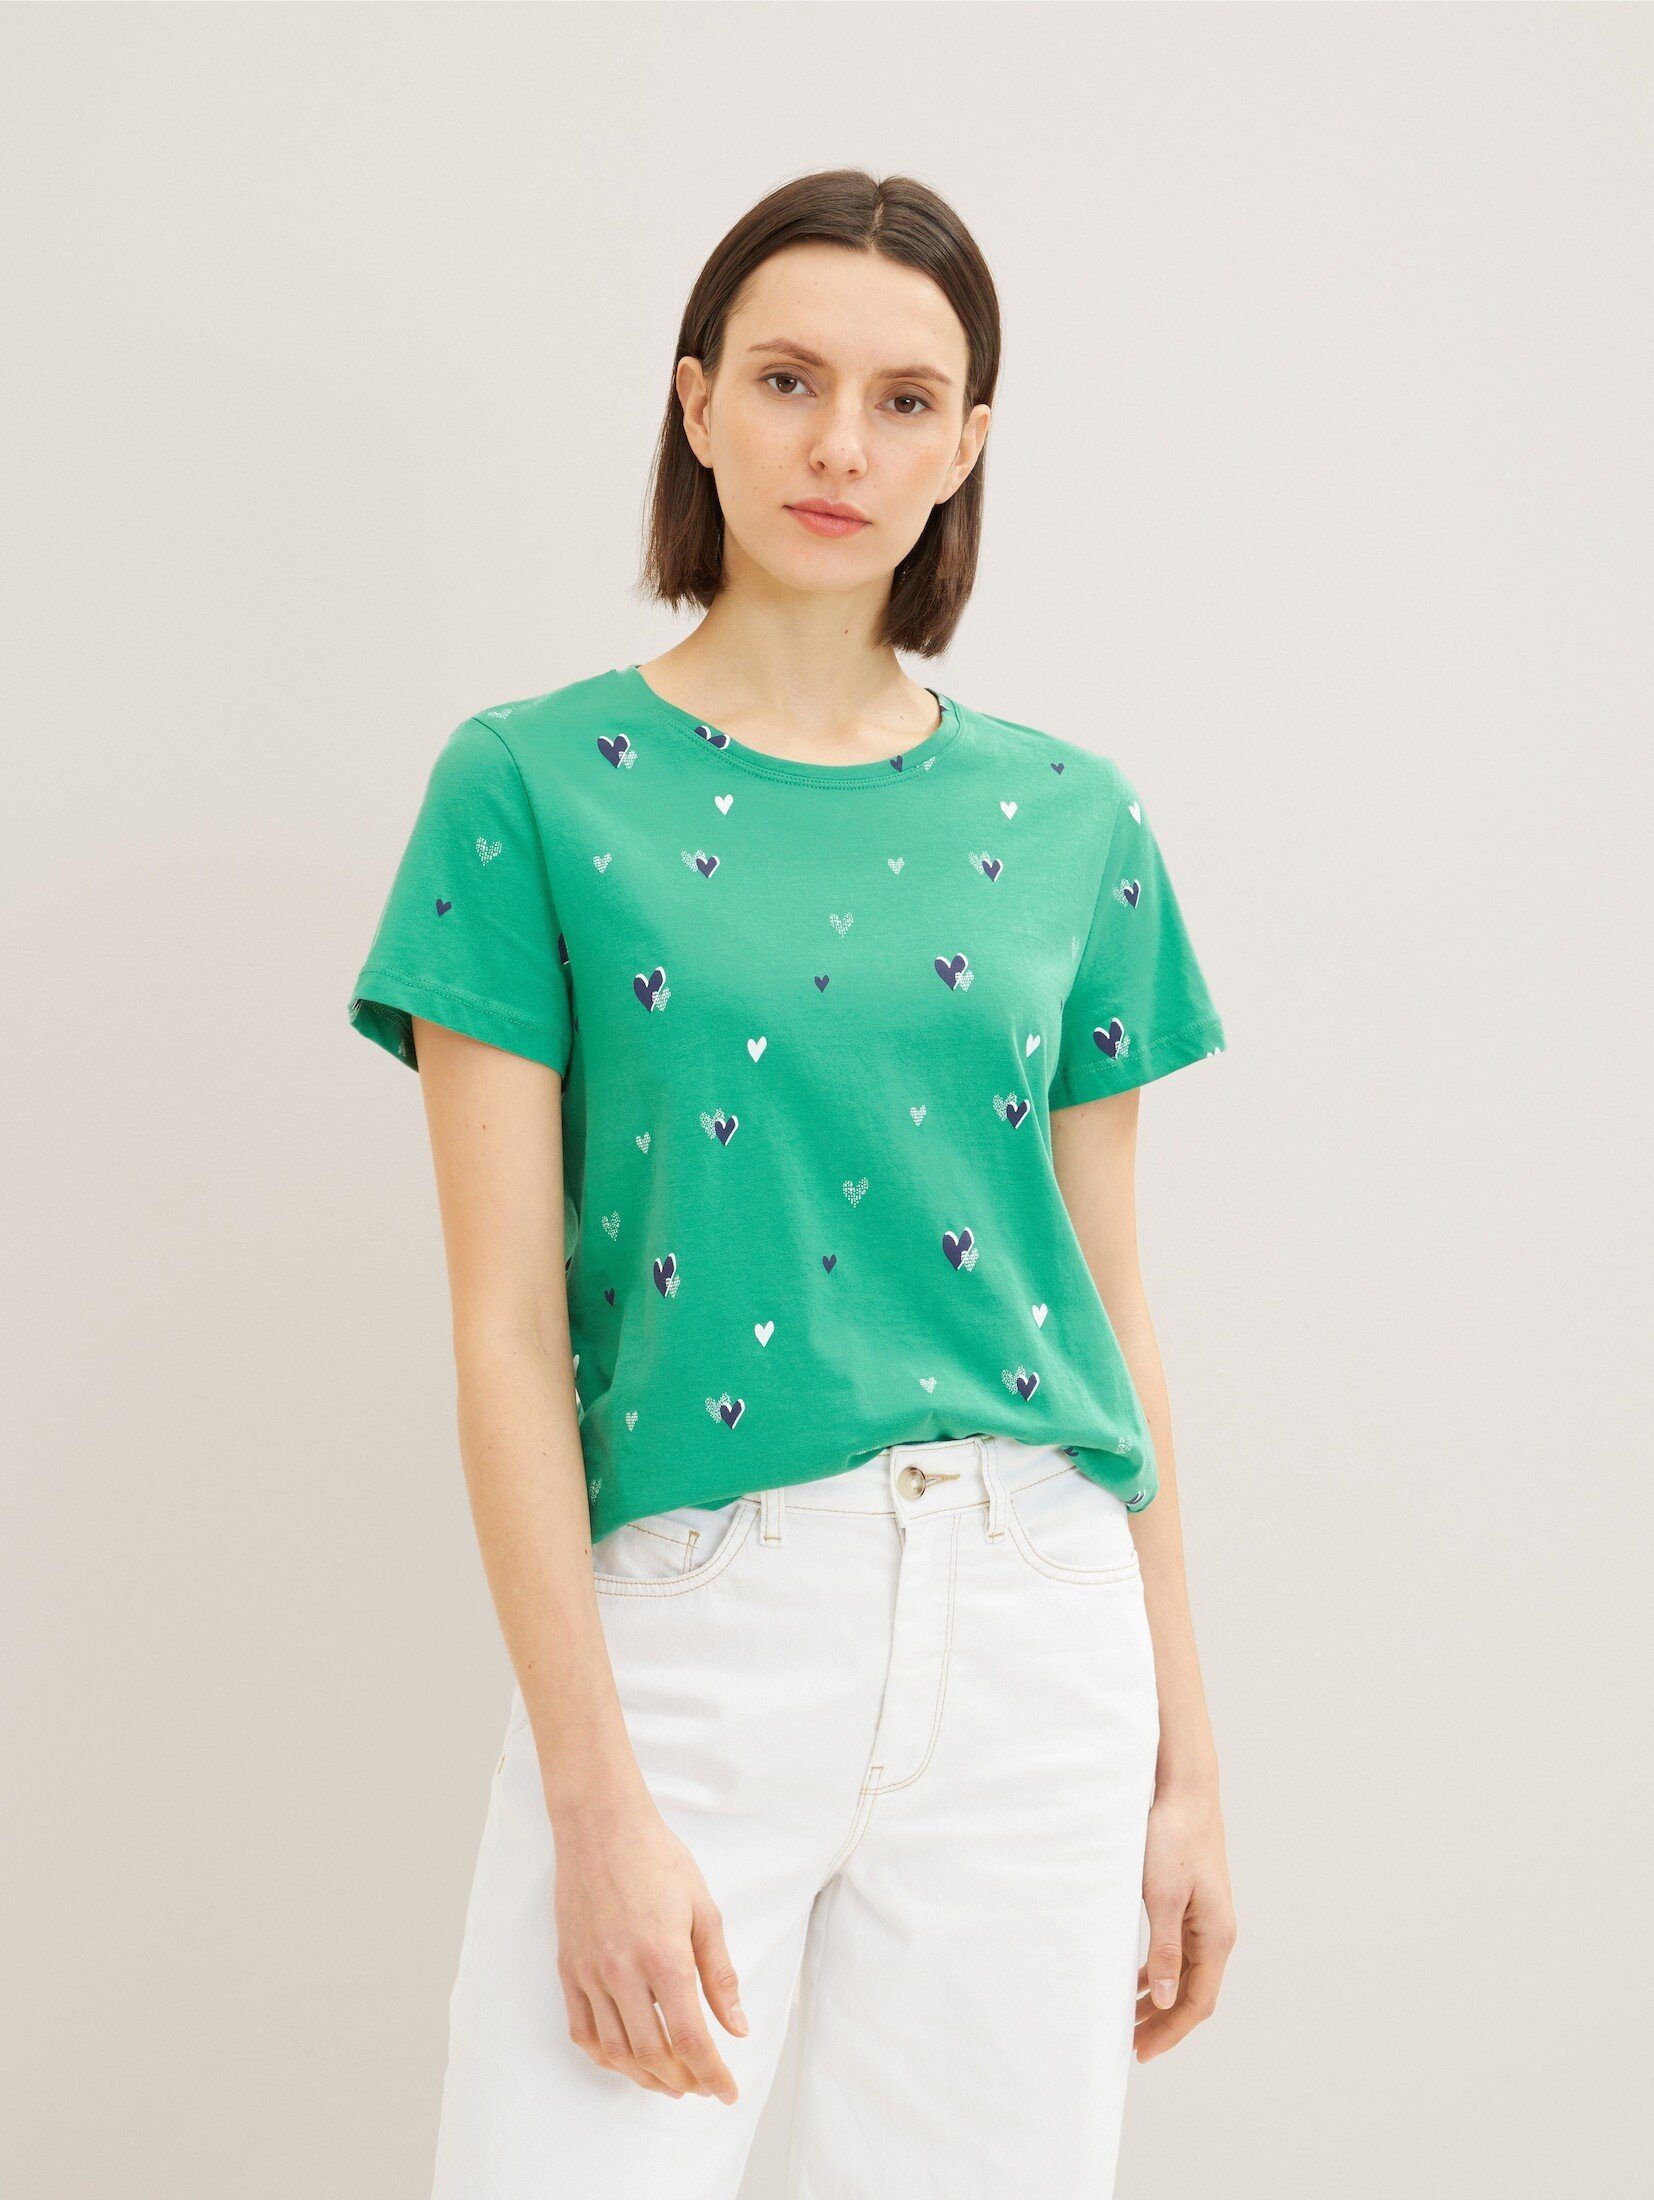 TOM TAILOR T-Shirt T-Shirt mit Print green navy heart design